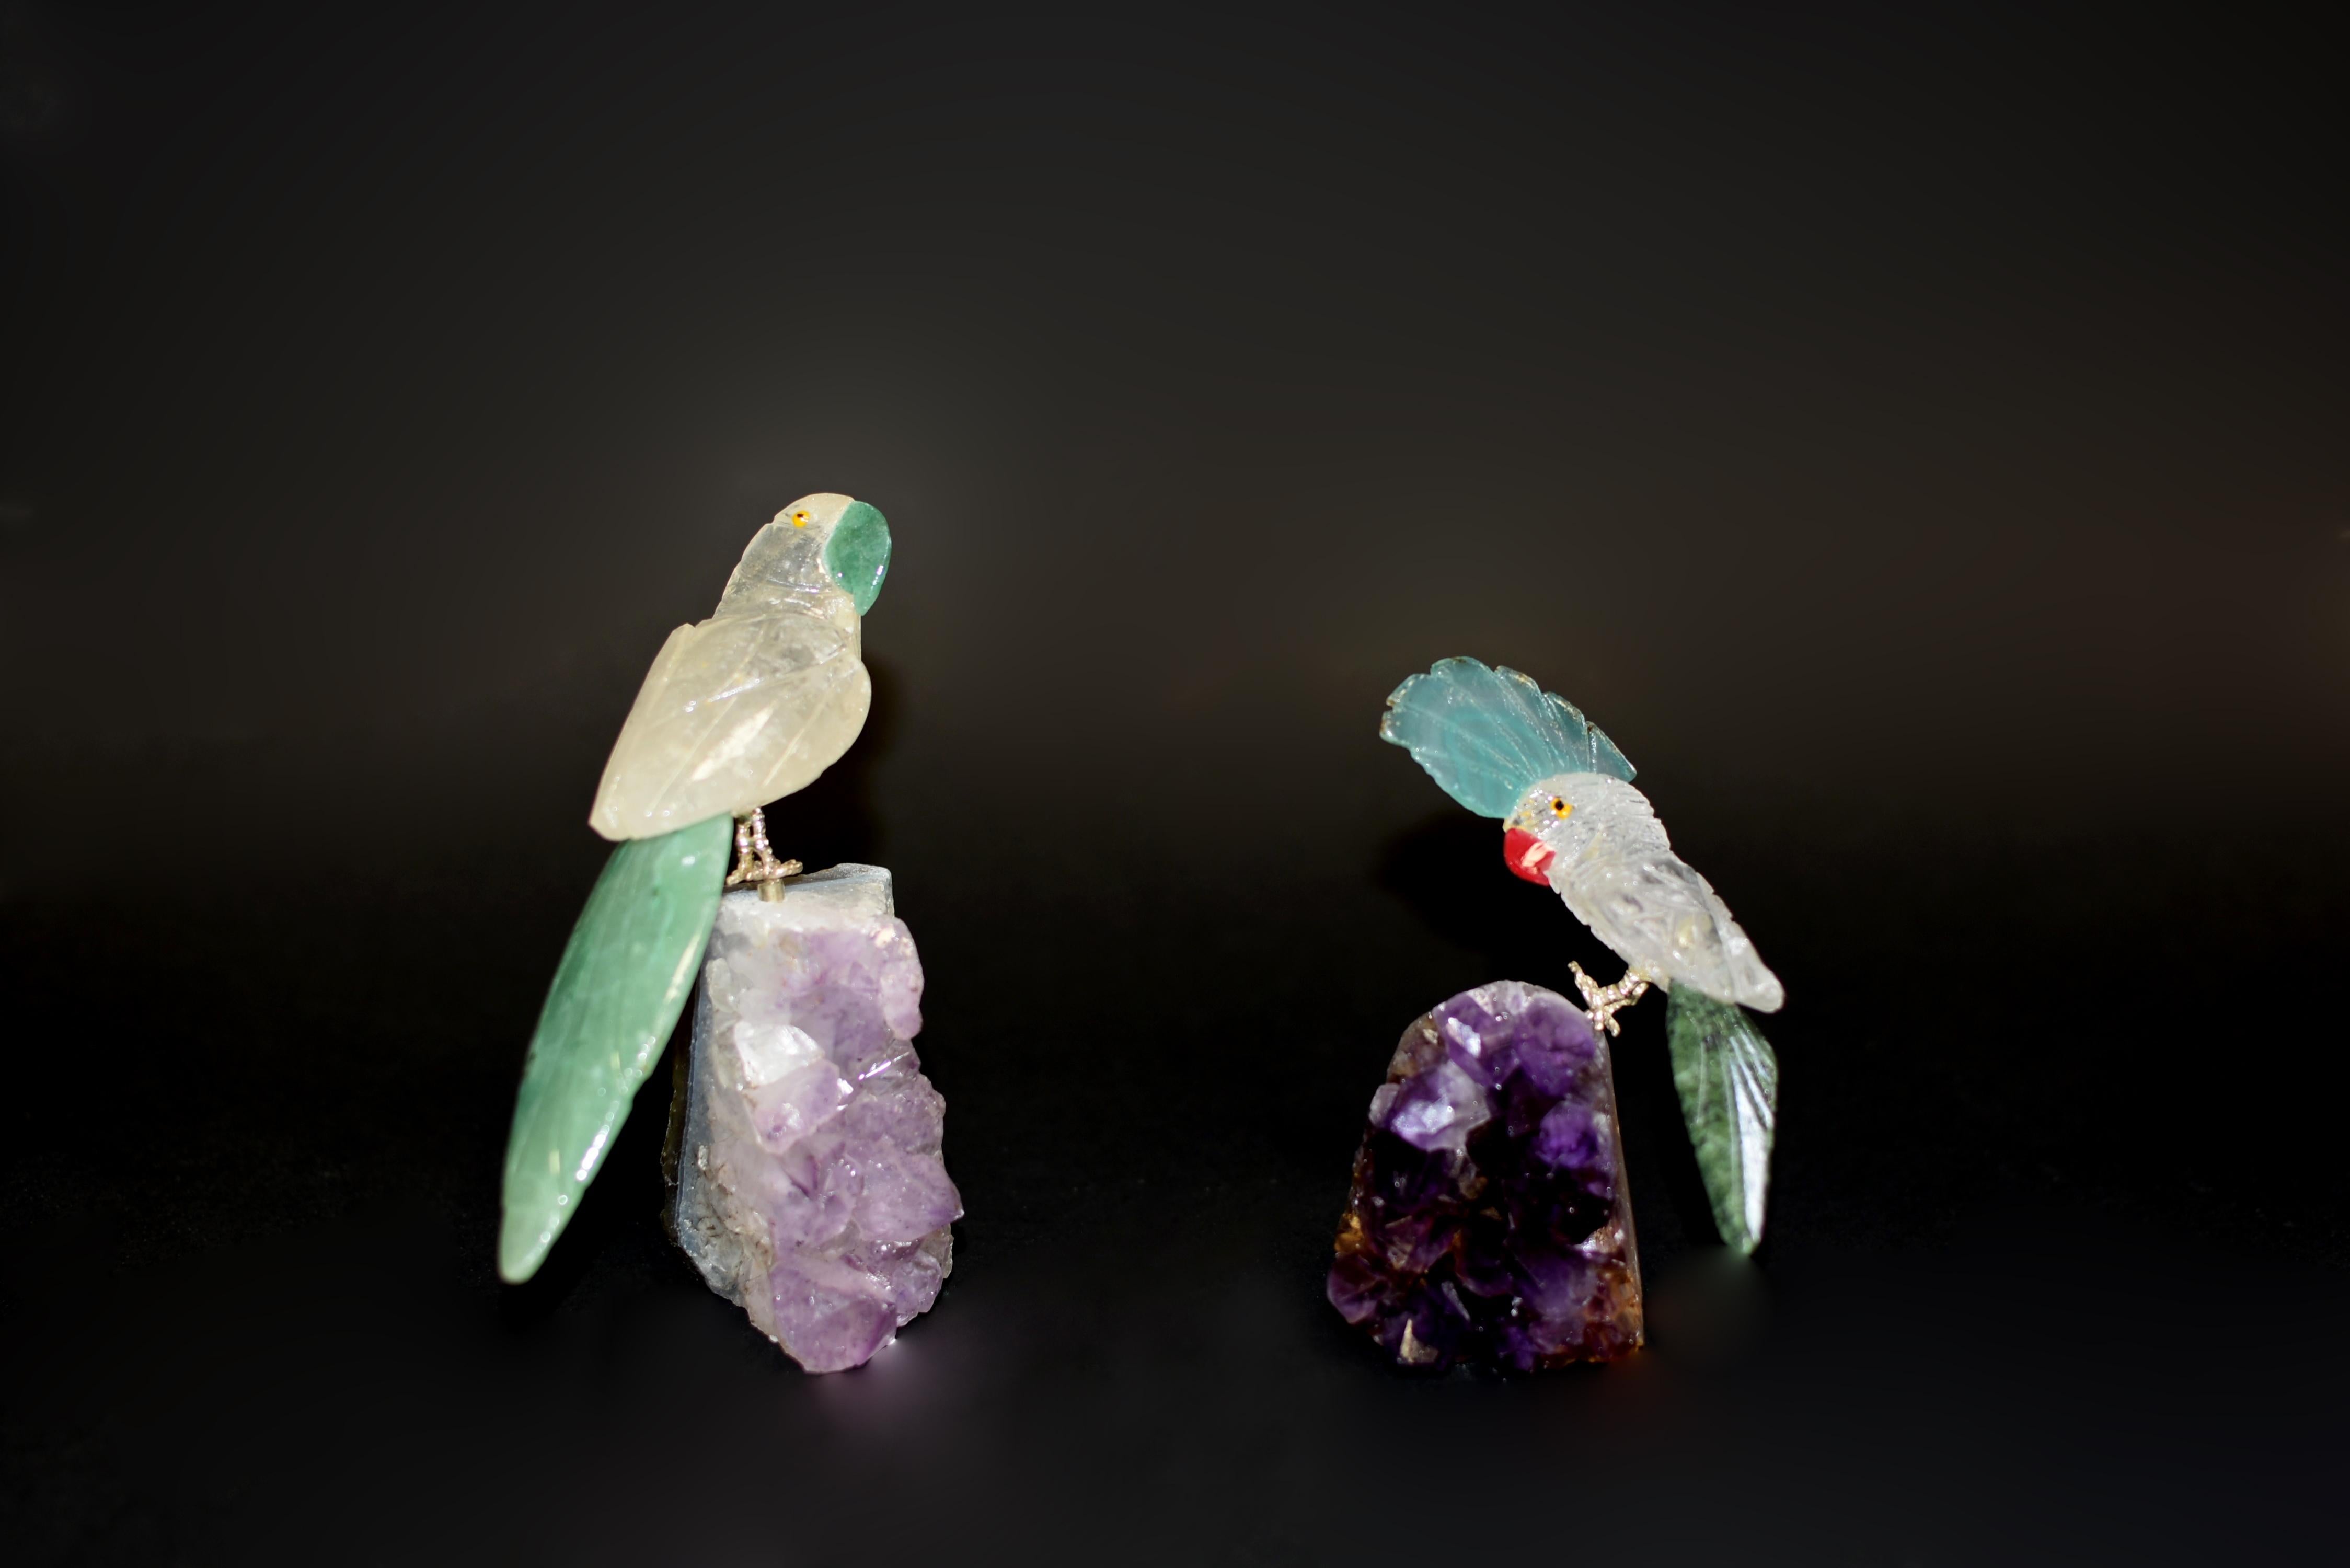 Deux perroquets en cristal de roche perchés sur des grappes d'améthyste. Modèle réaliste à l'expression curieuse et amusante, avec plumage en cristal de roche naturel, aventurine et queues en serpentine verte. Becs en aventurine et couronne en